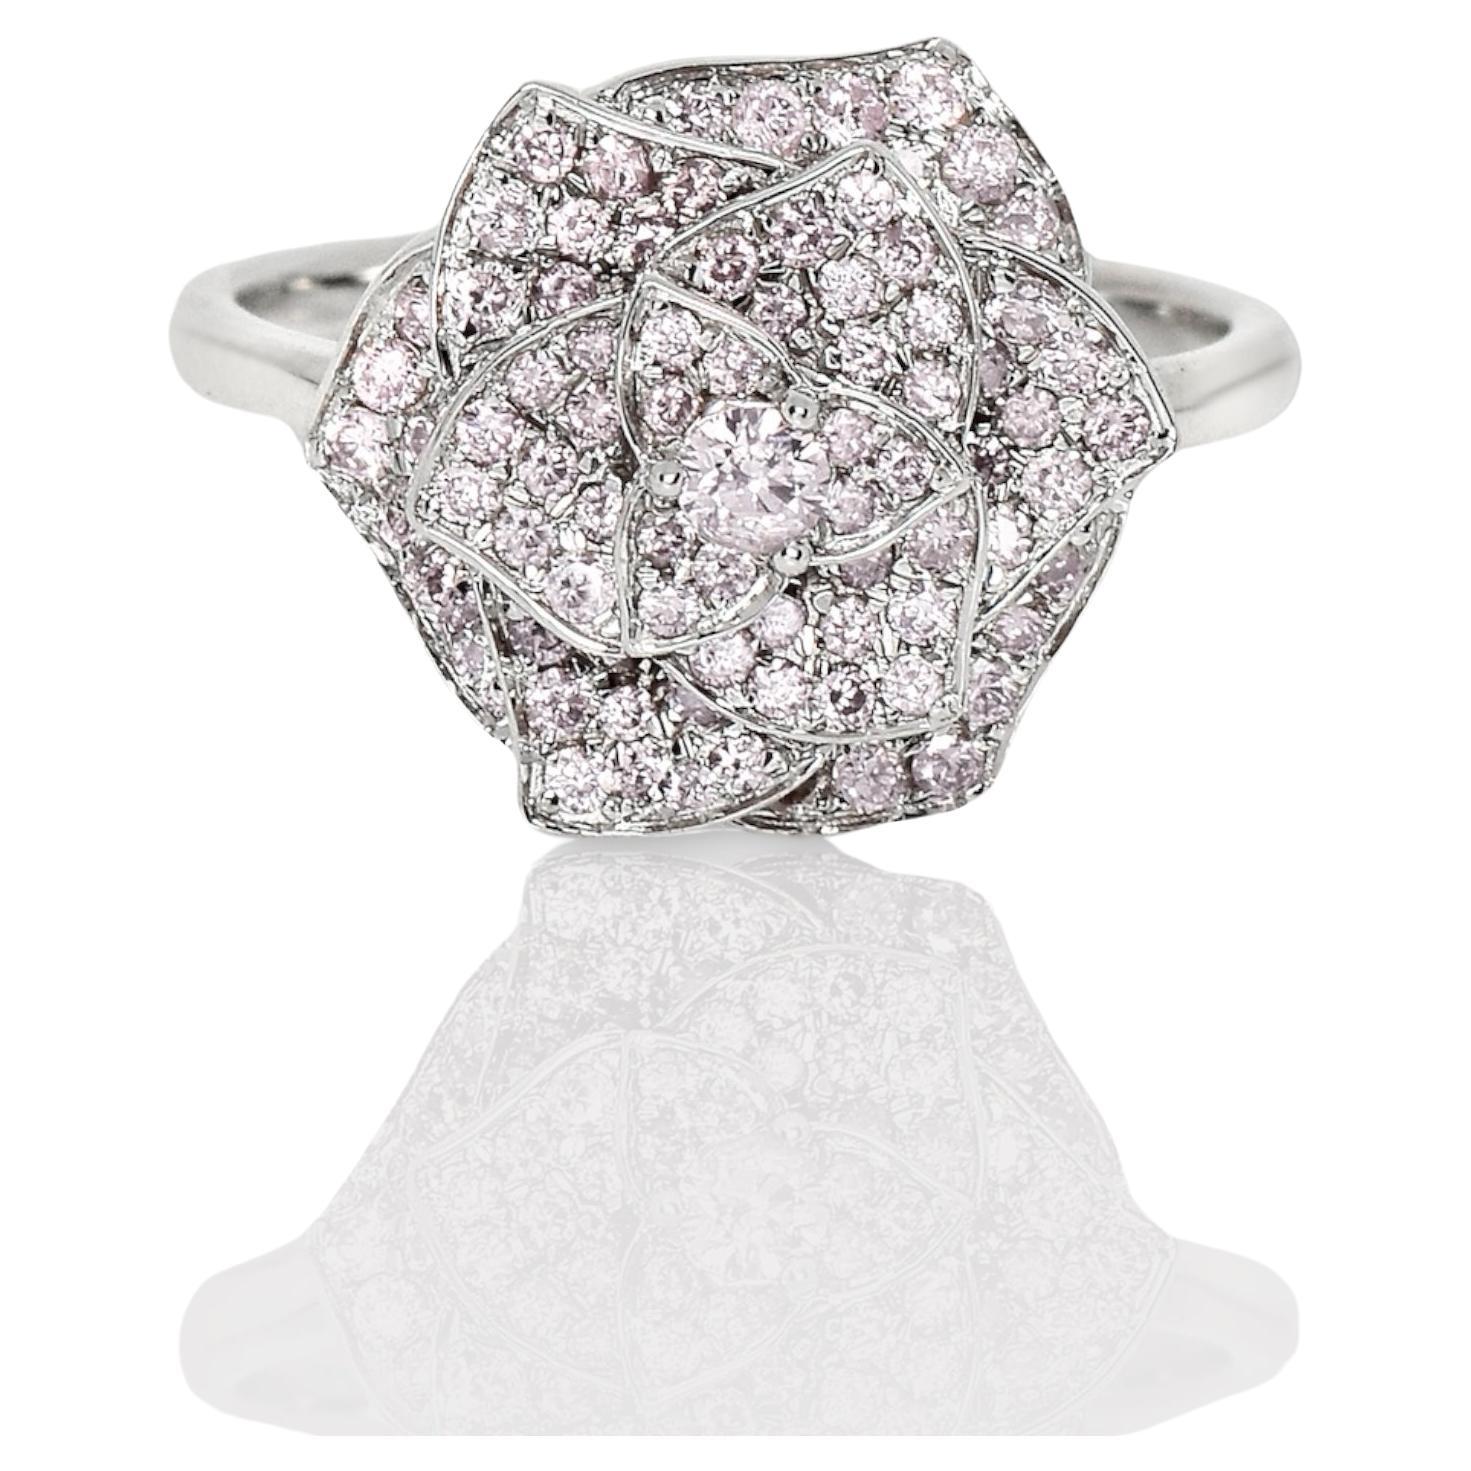 IGI 14K 0.62 ct Natural Pink Diamonds Rose Design Antique Art Deco Ring